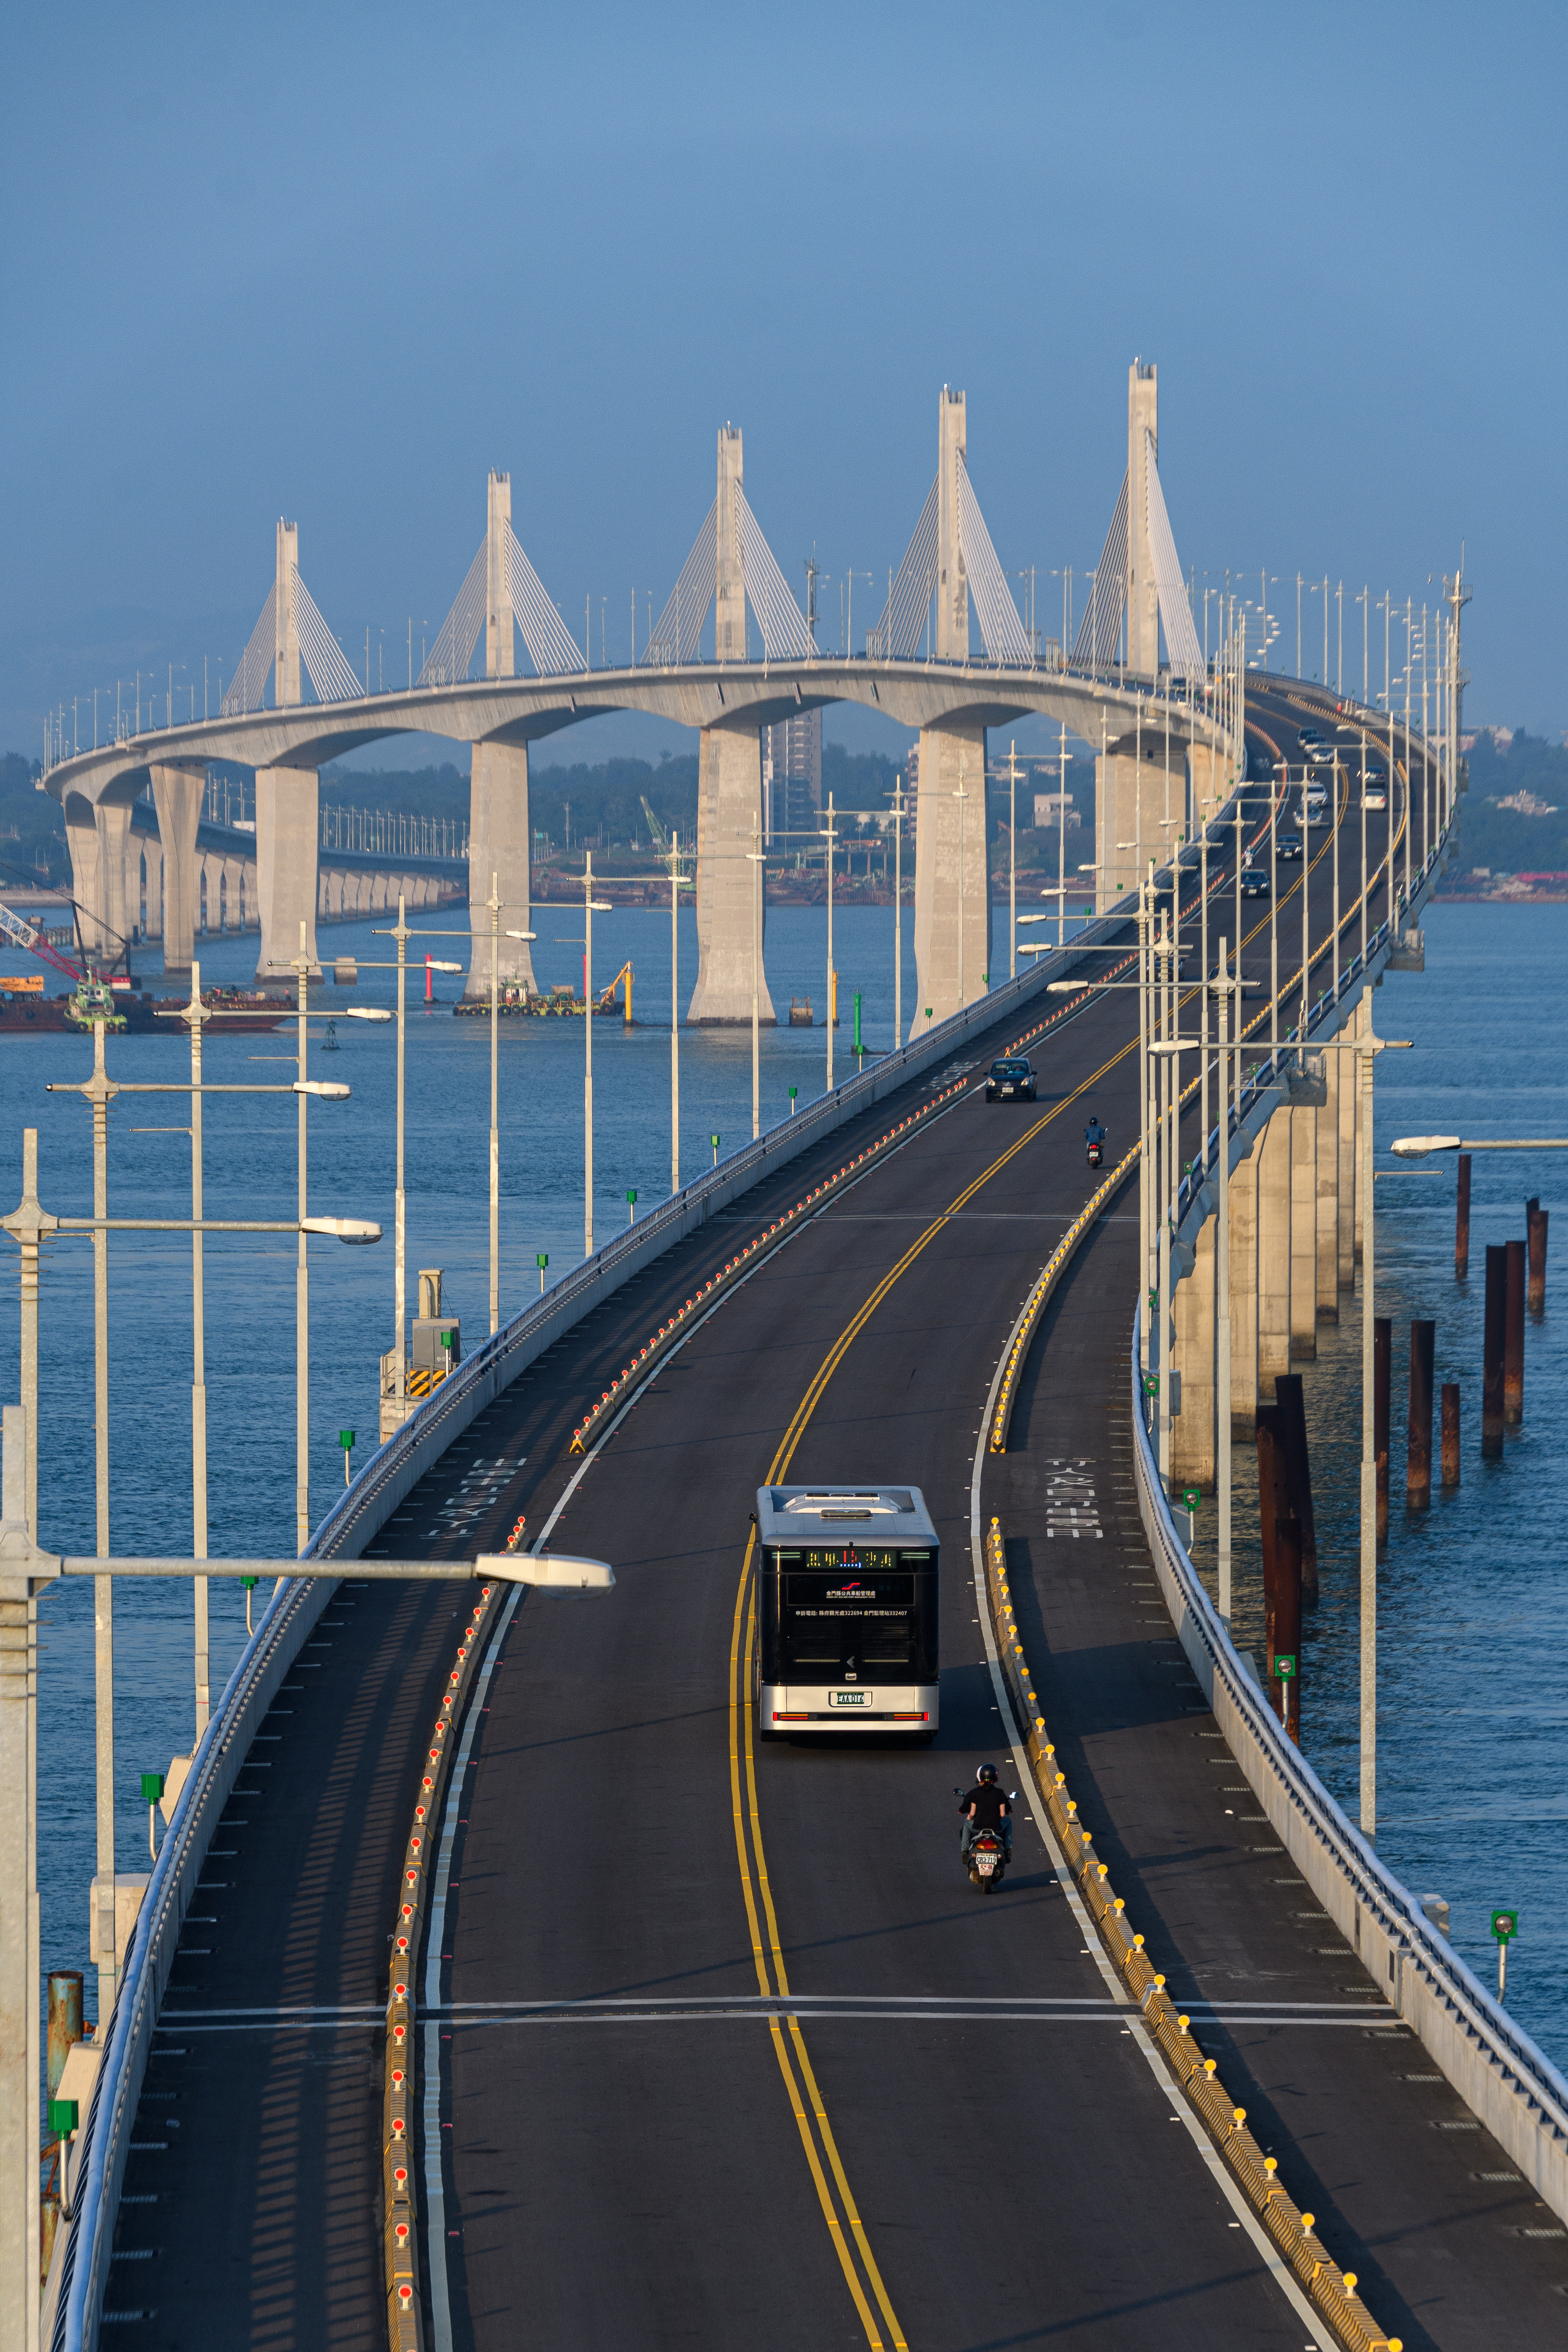 金門大橋建設計畫第CJ02-2C標金門大橋接續工程 111年10月30日通車